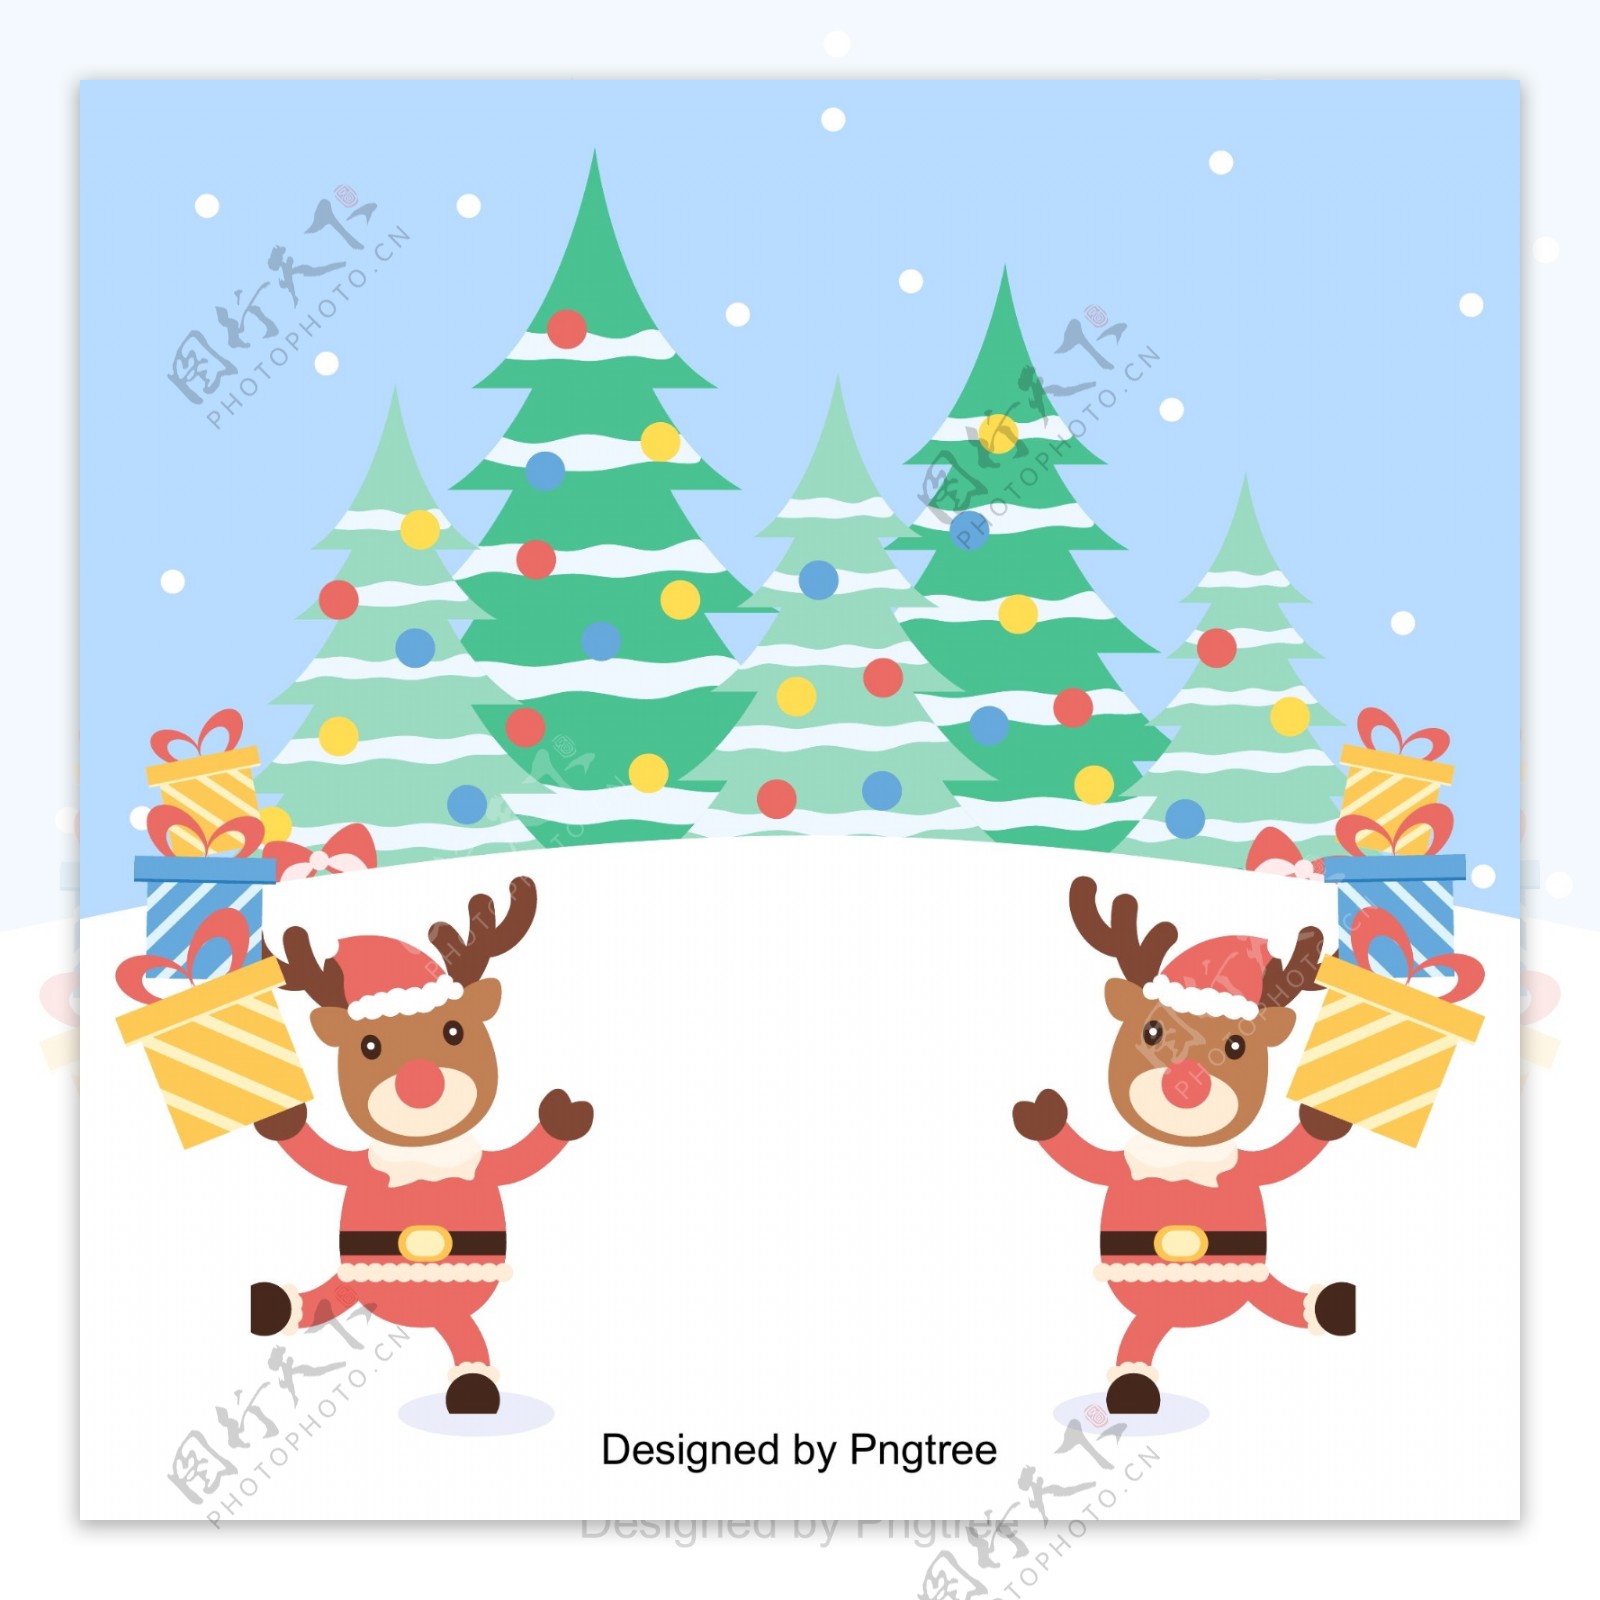 扁平的矢量插图可爱的麋鹿为圣诞节的背景